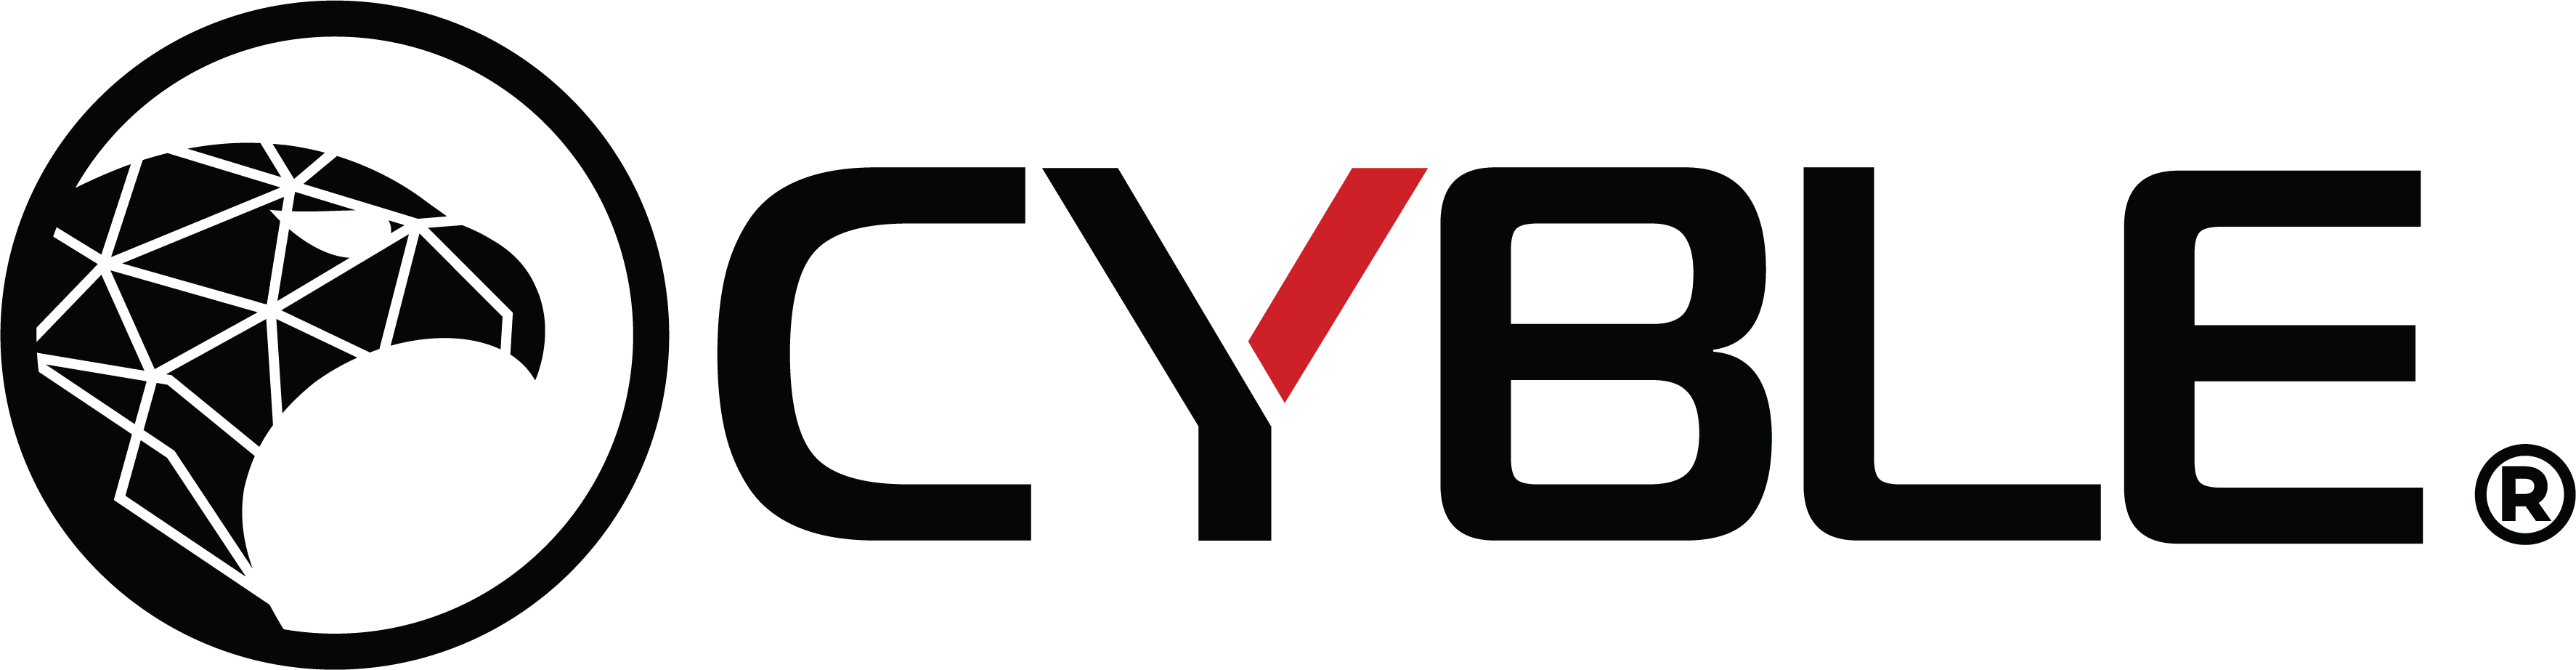 Cyble Logo